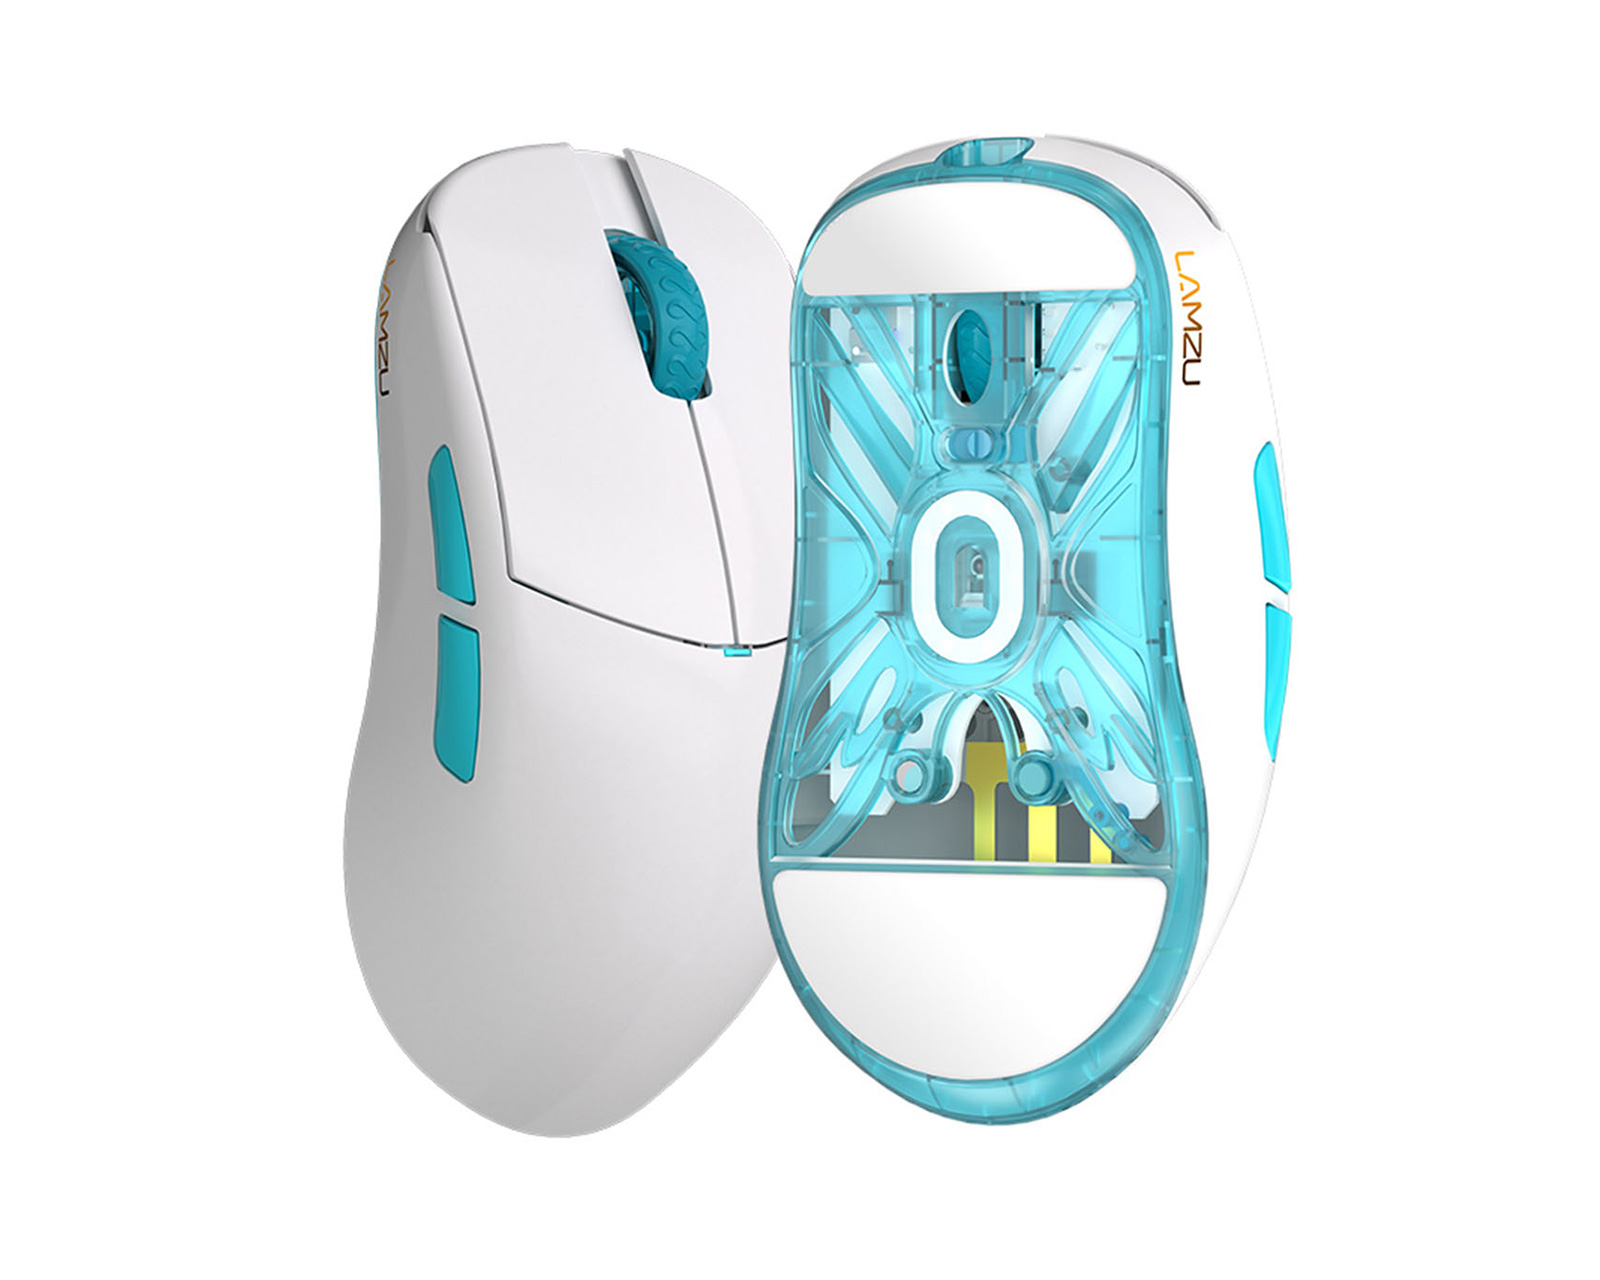 Atlantis OG V2 Pro Wireless Superlight Gaming Mouse - Polar White